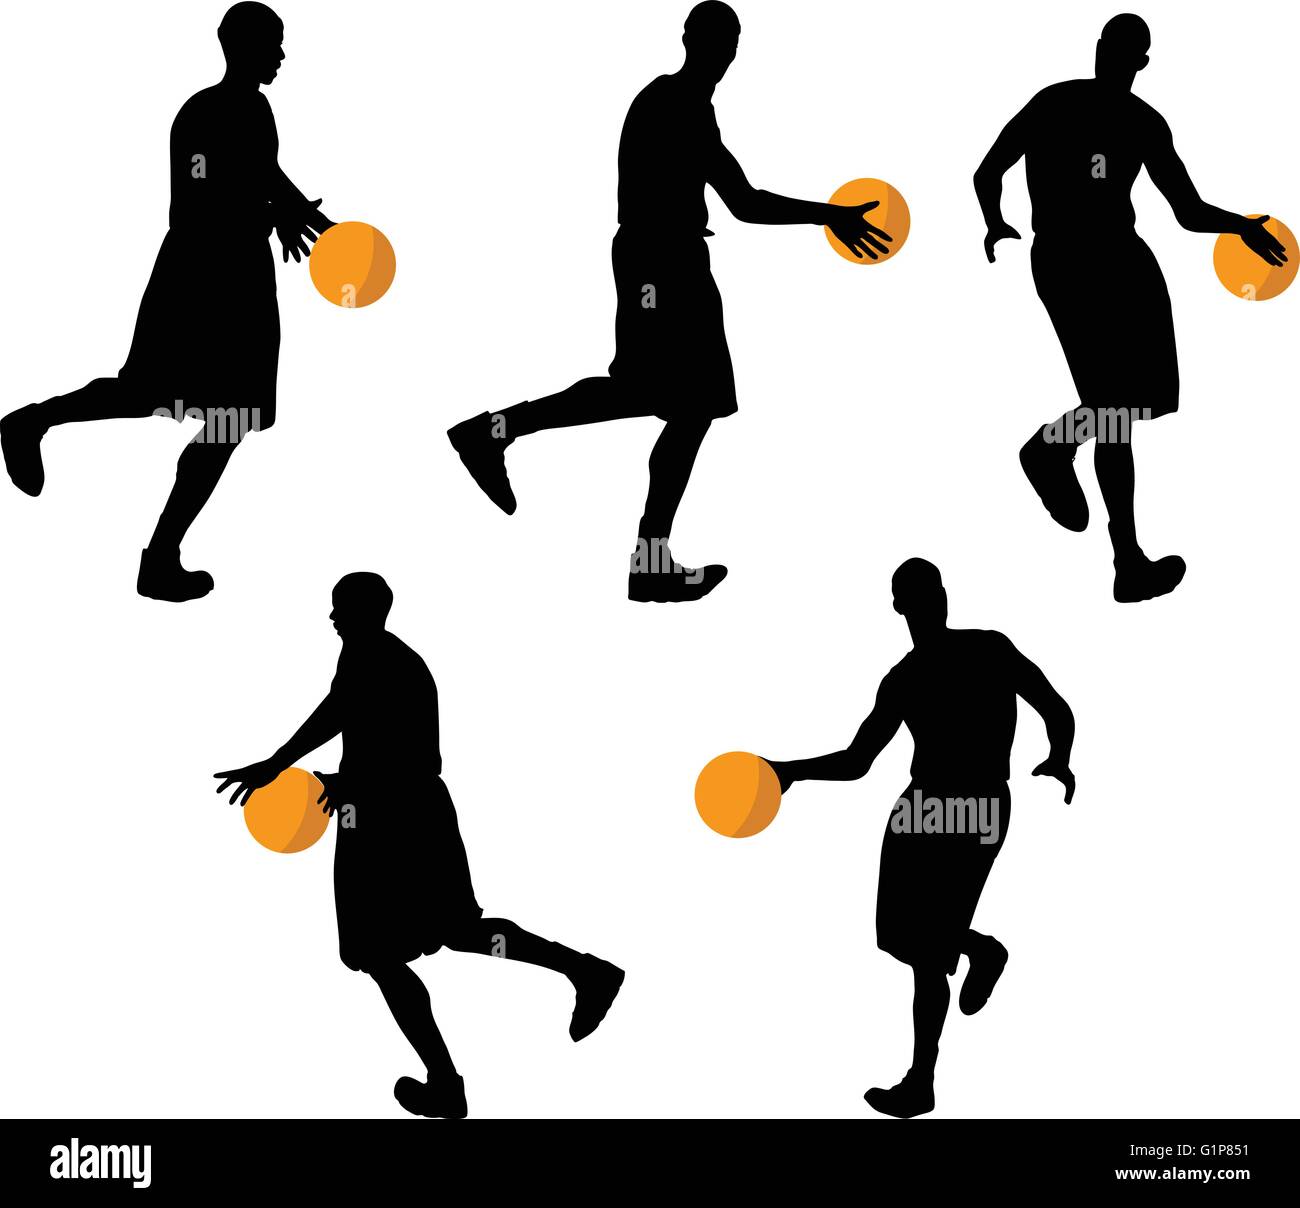 Image vectorielle - basketball player silhouette en drible pose, isolé sur  fond blanc Image Vectorielle Stock - Alamy